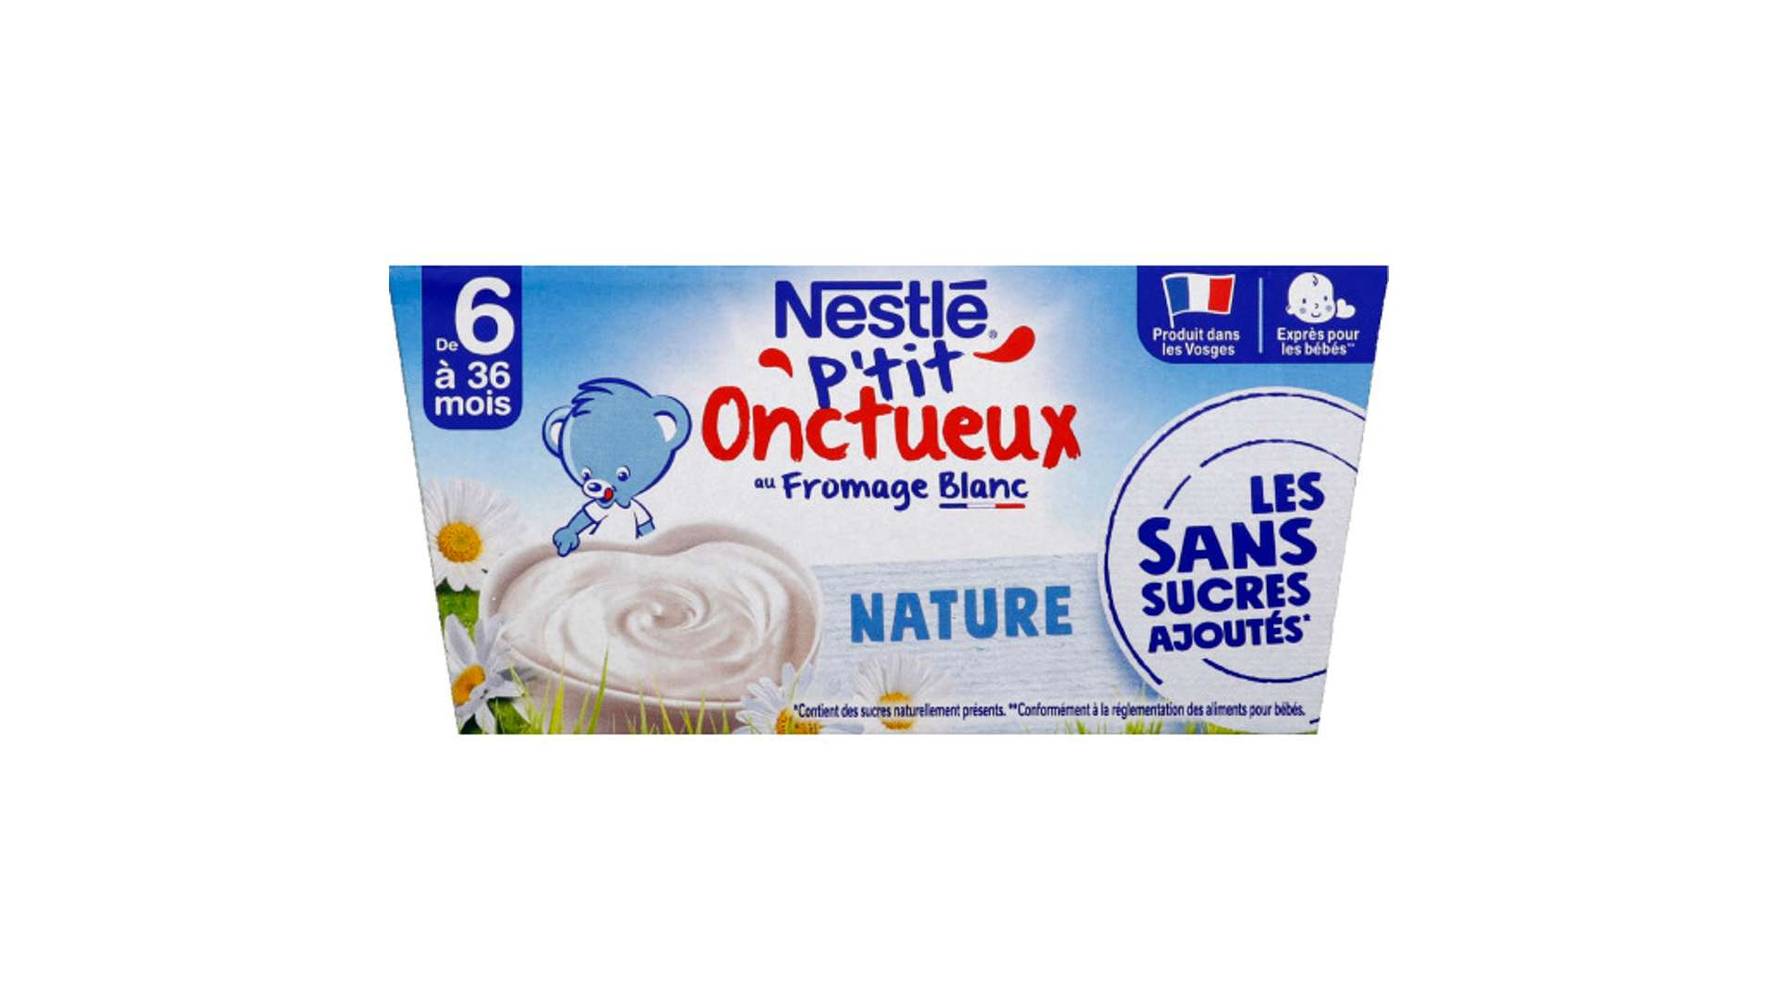 NESTLE Nestle p tit onctueux nature au fromage blanc  - 4 x 90g - dÈs 6 mois Les 4 pots de 90g